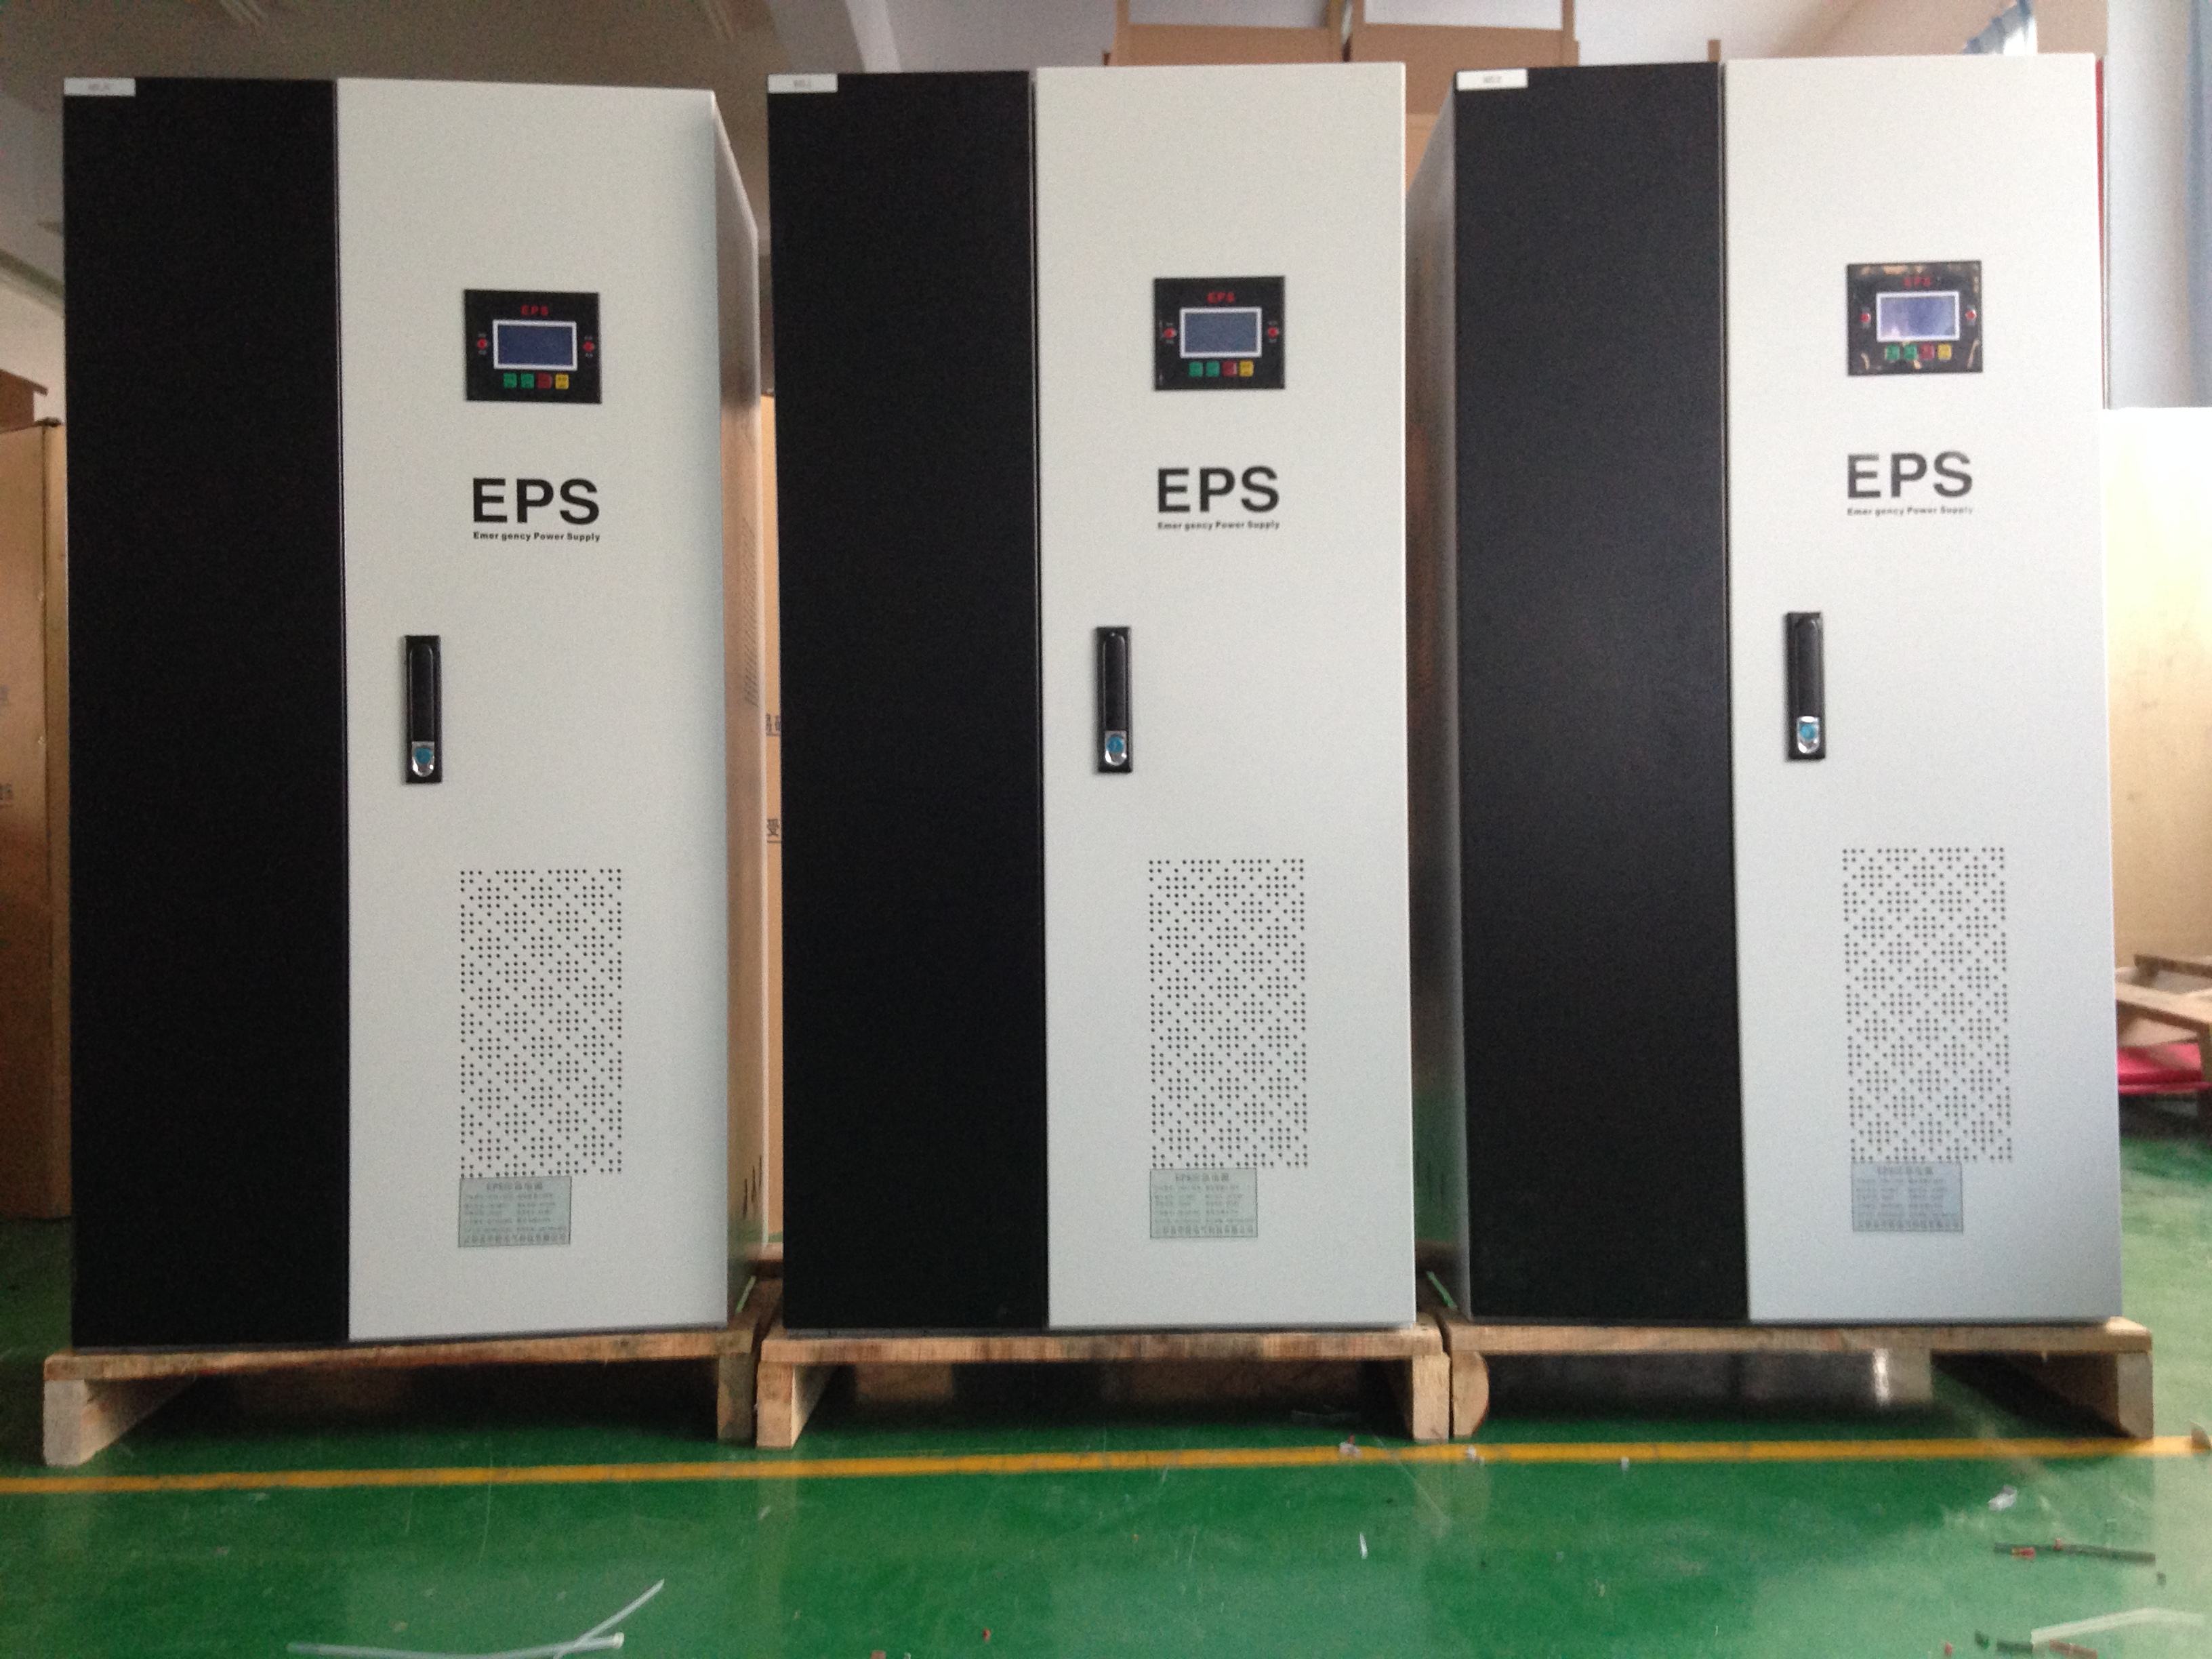 EPS消防应急电源EPS-0.5KW检测报告CCC消防认证资质齐全 